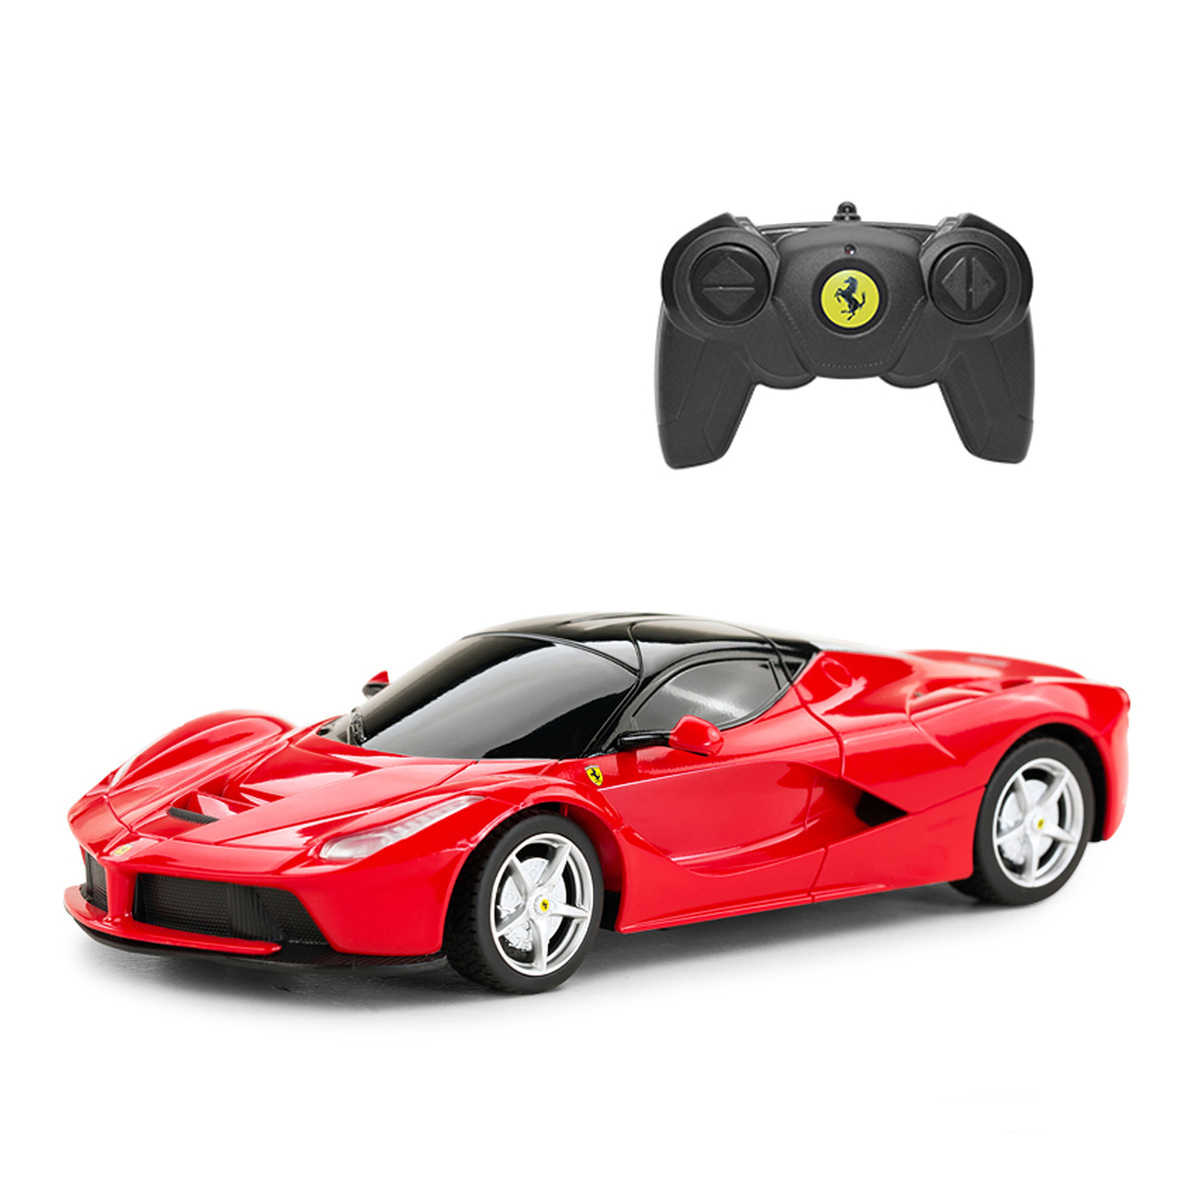 Rastar 1:24 Remote Control Ferrari Car, 48900